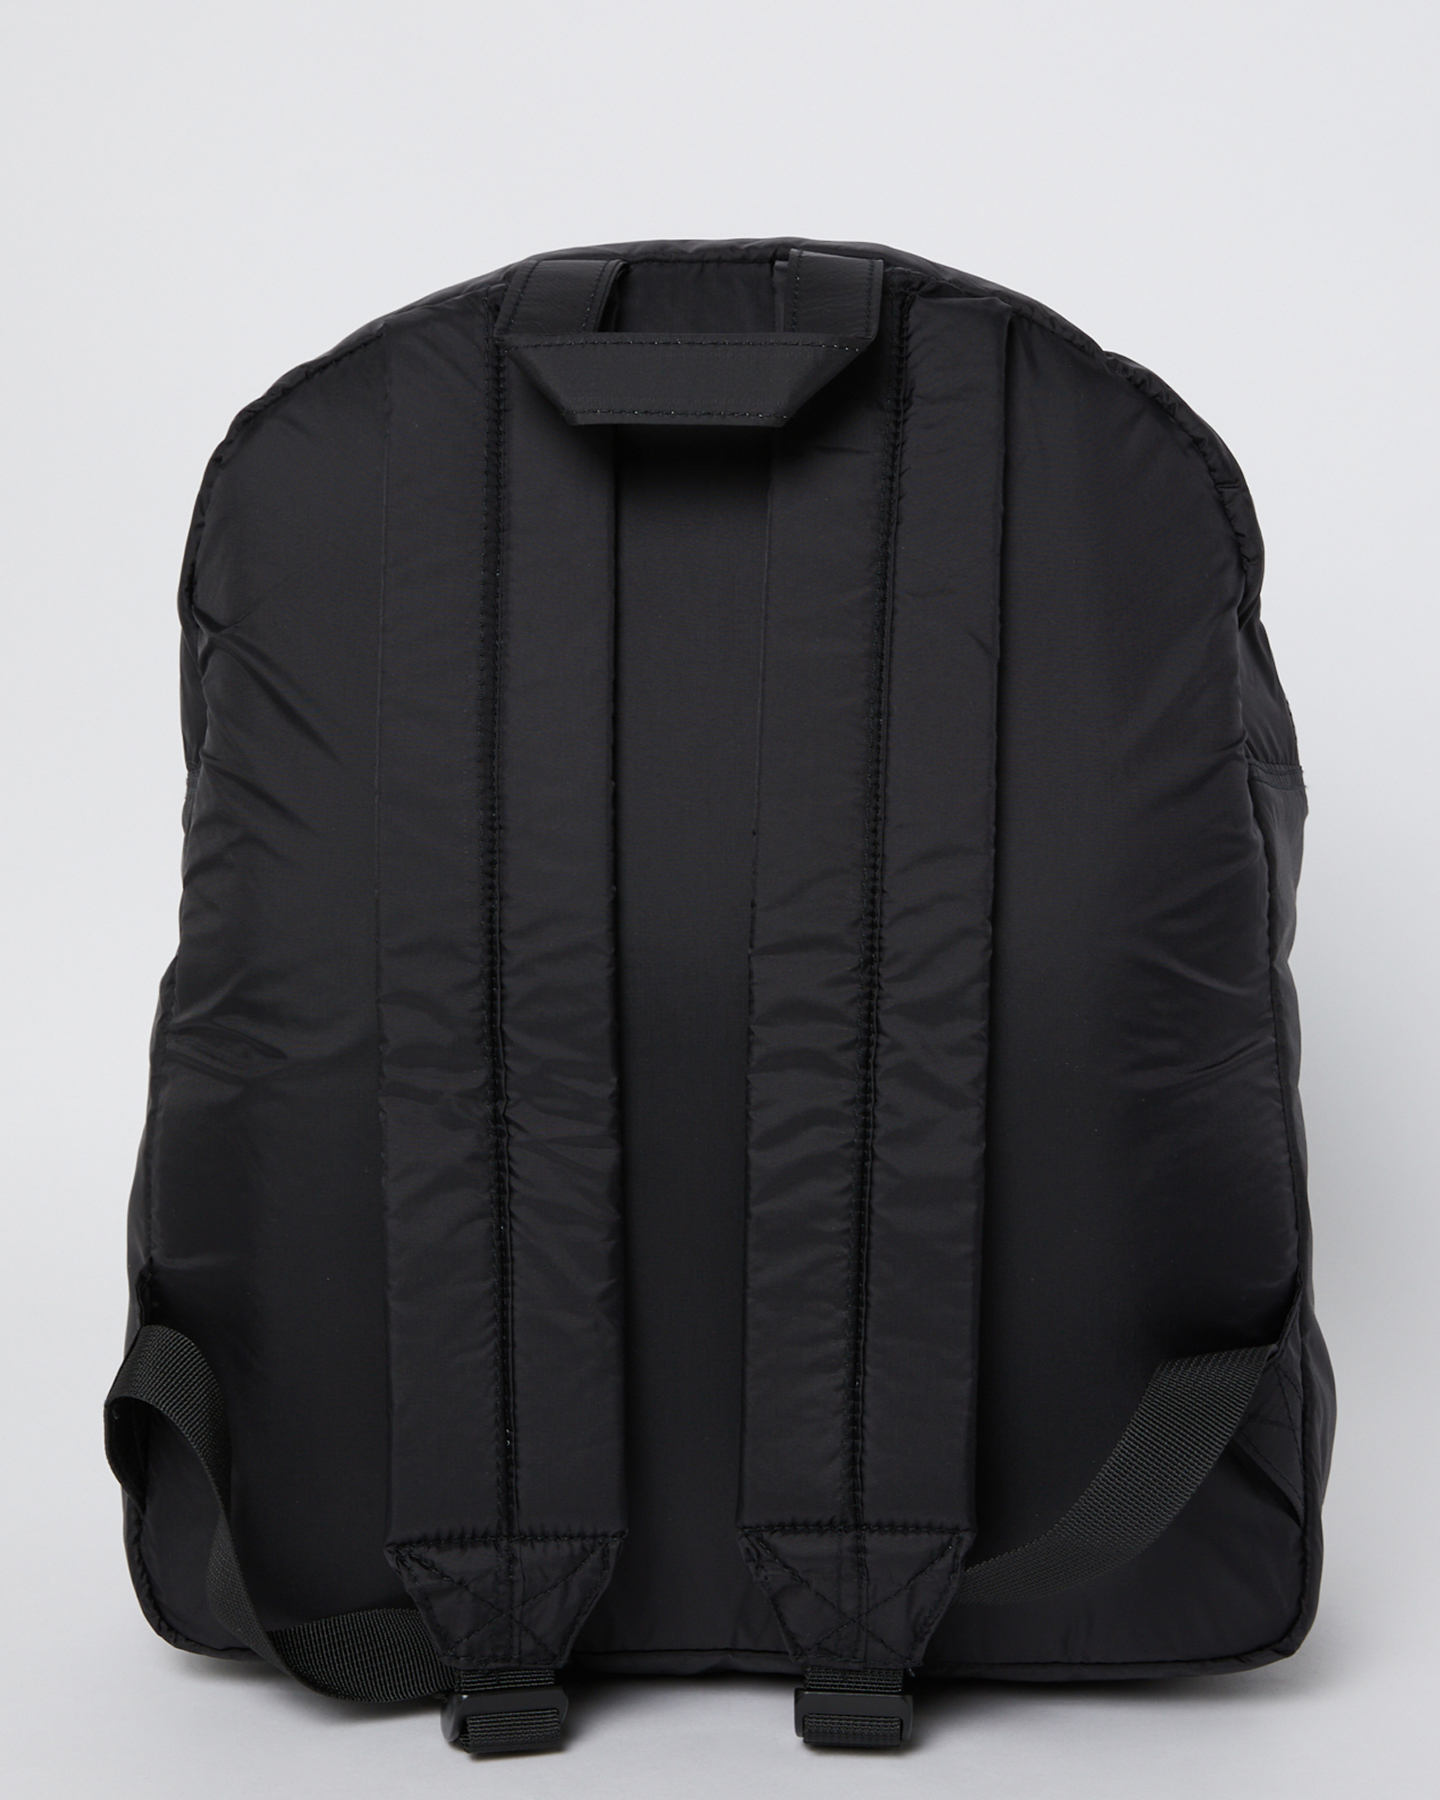 Misfit Garnished Backpack - Black | SurfStitch